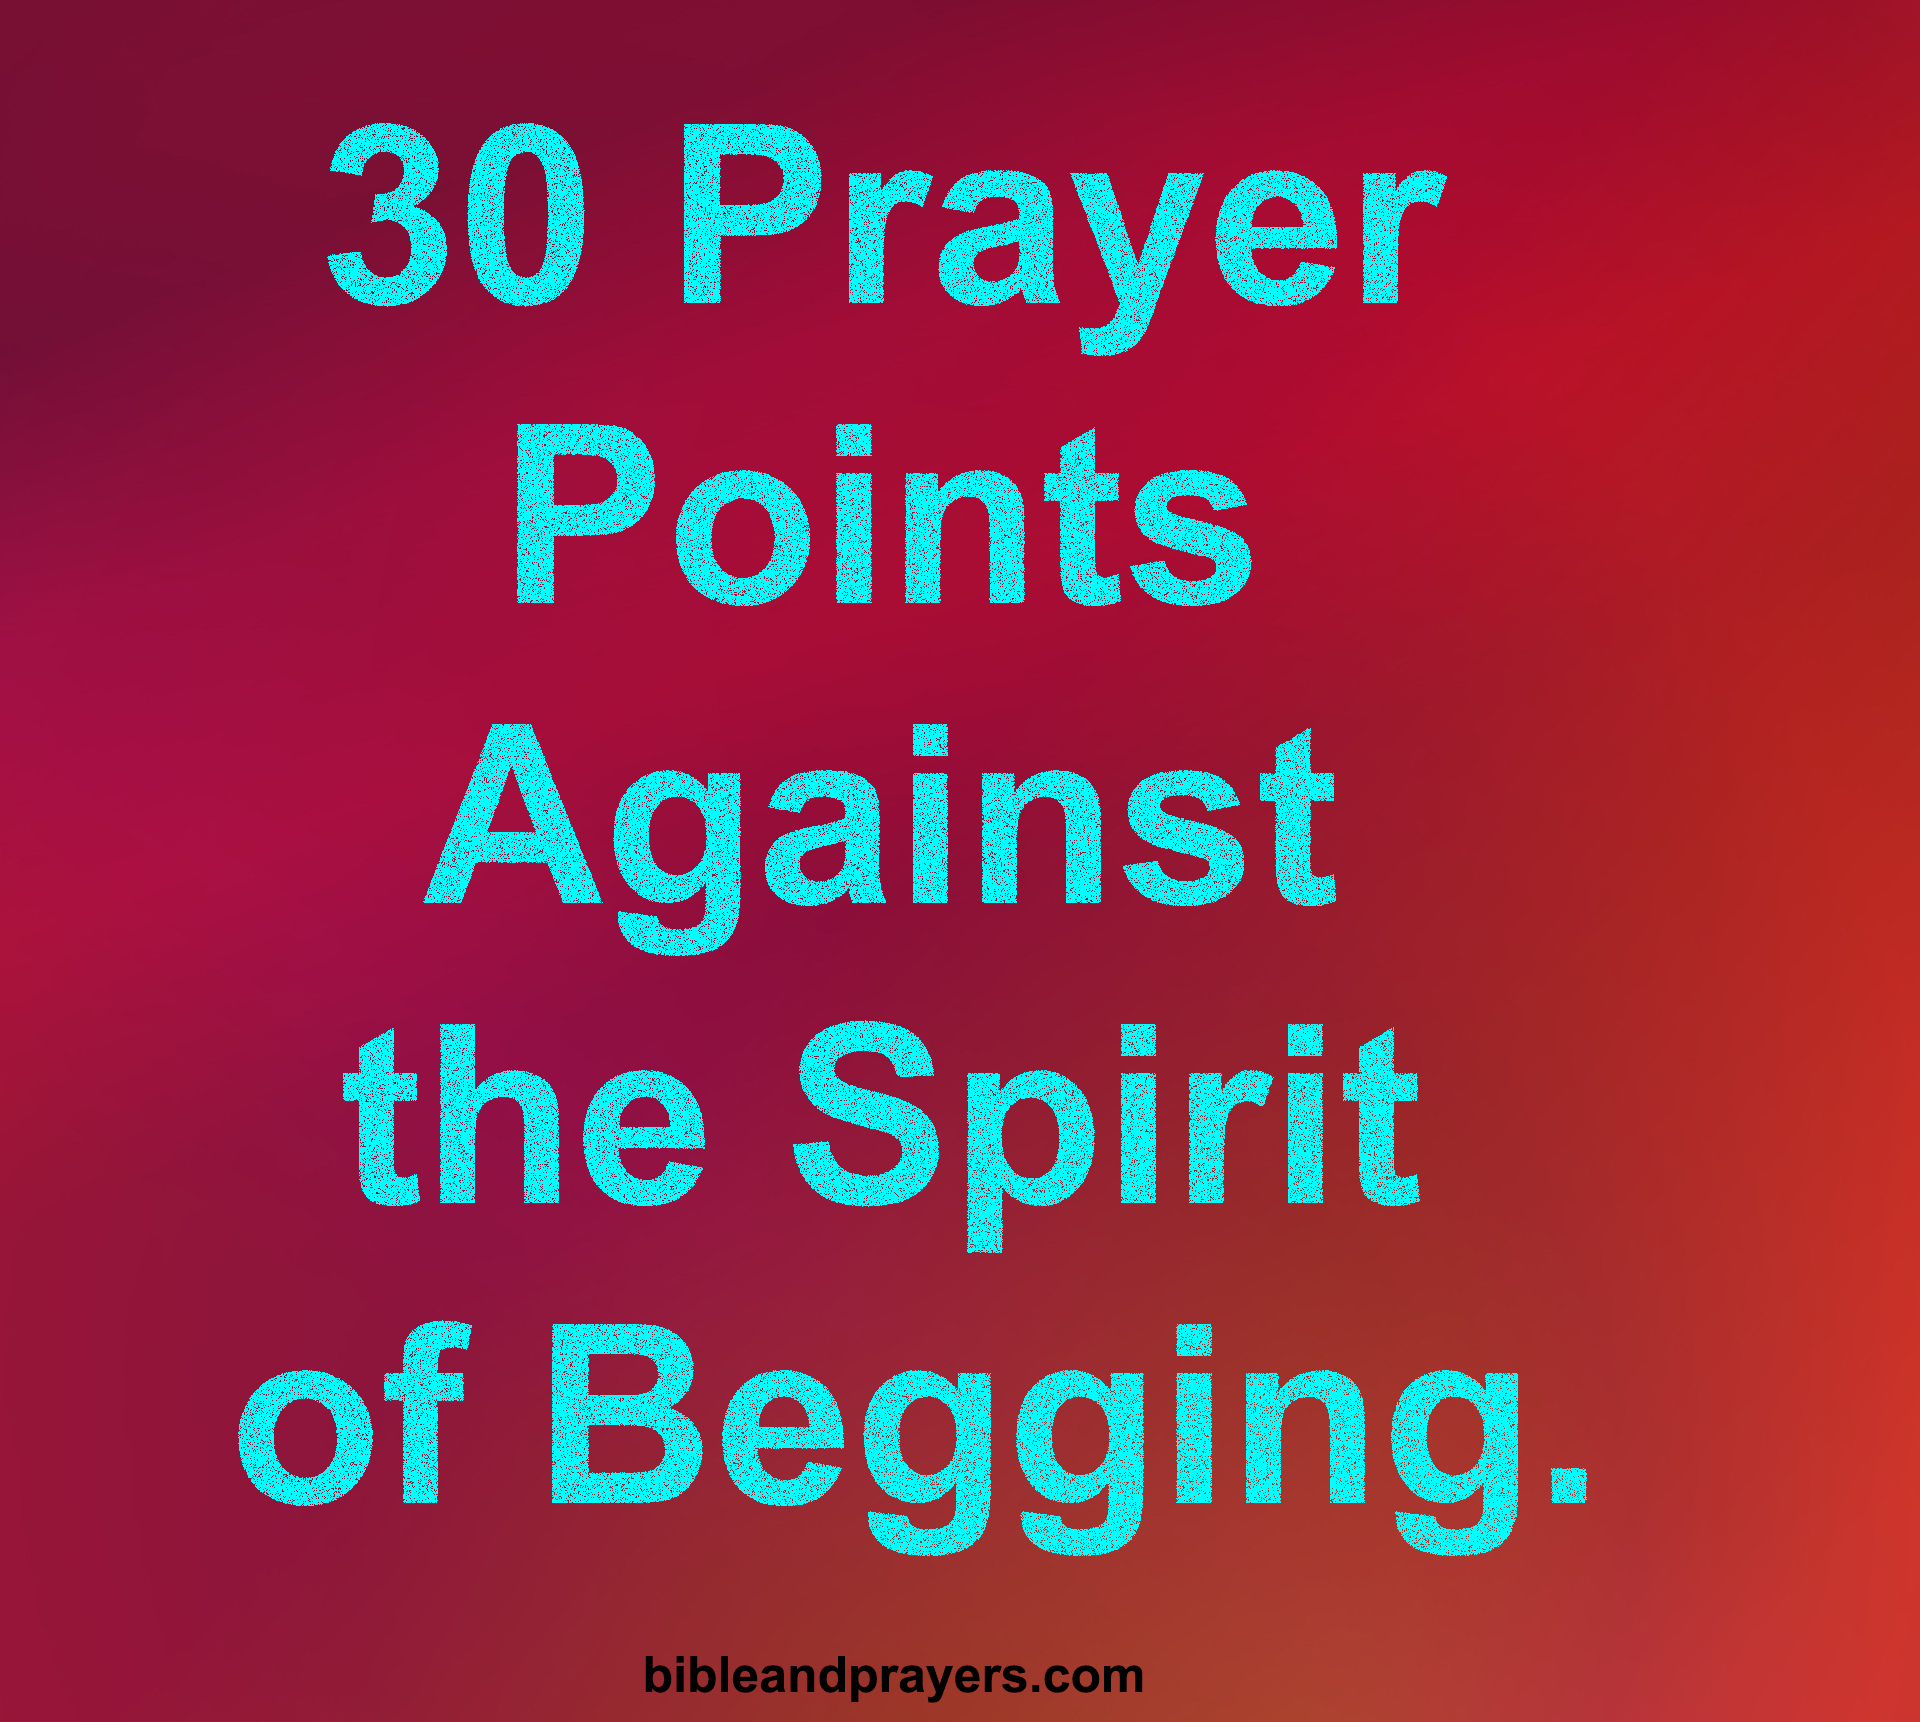 30 Prayer Points Against the Spirit of Begging.